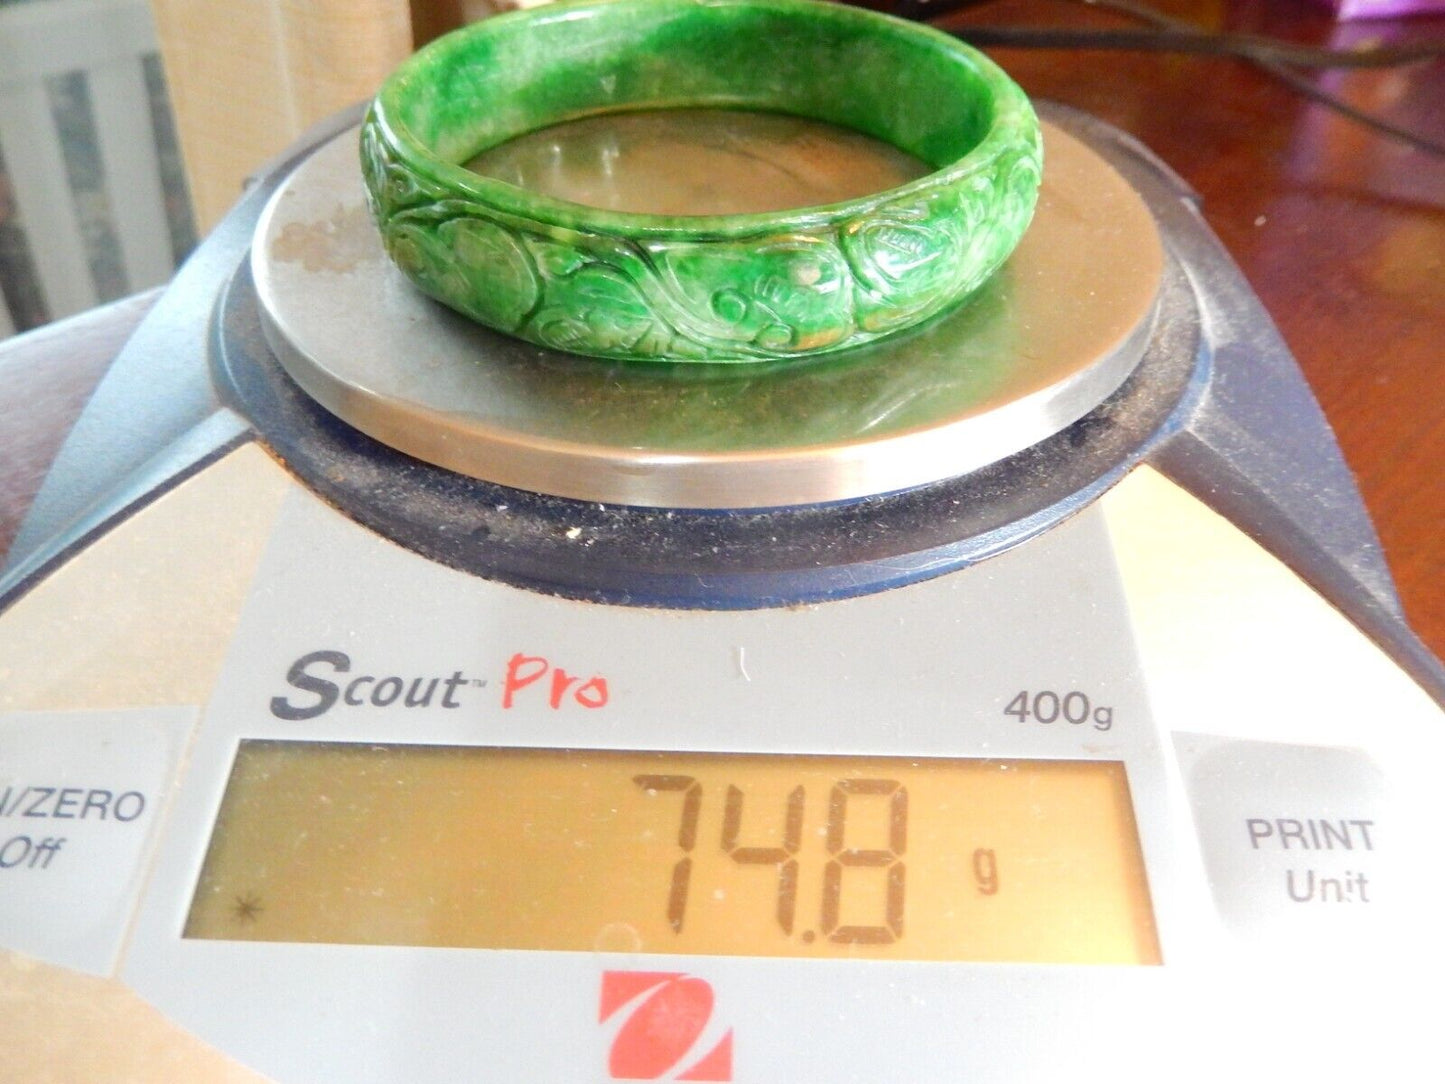 "VINTAGE" 85mm OD Ancient Natural Green Jadeite Hand-Carved Jade Bracelet Bangle